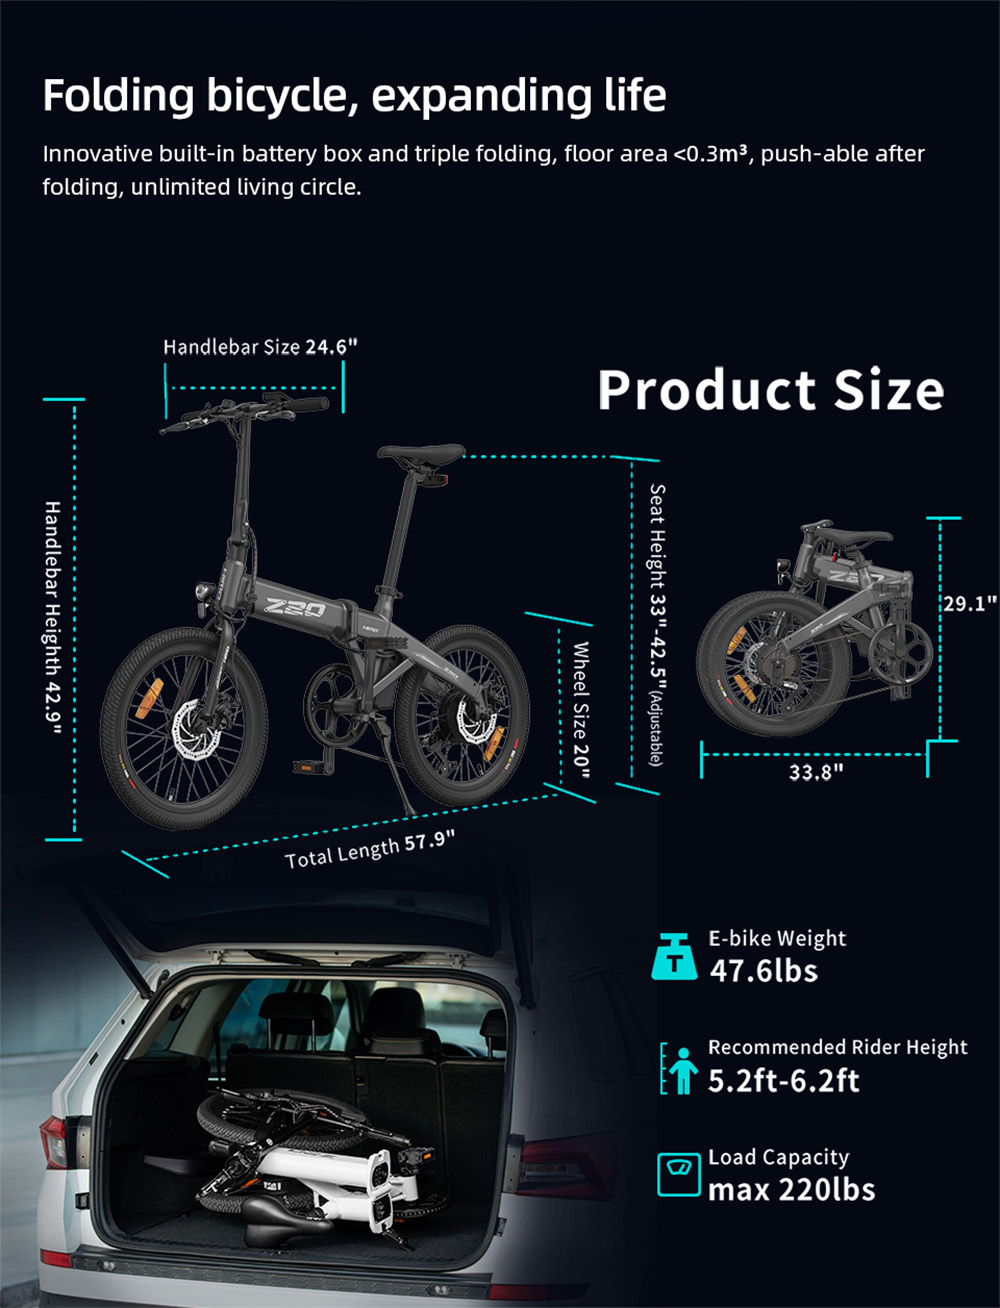 HIMO Z20 Max bicicletta elettrica 250 W motore 20 pollici fino a 25 km/h con acceleratore a pedale e modalità E-assist pneumatici per tutte le stagioni - bianco